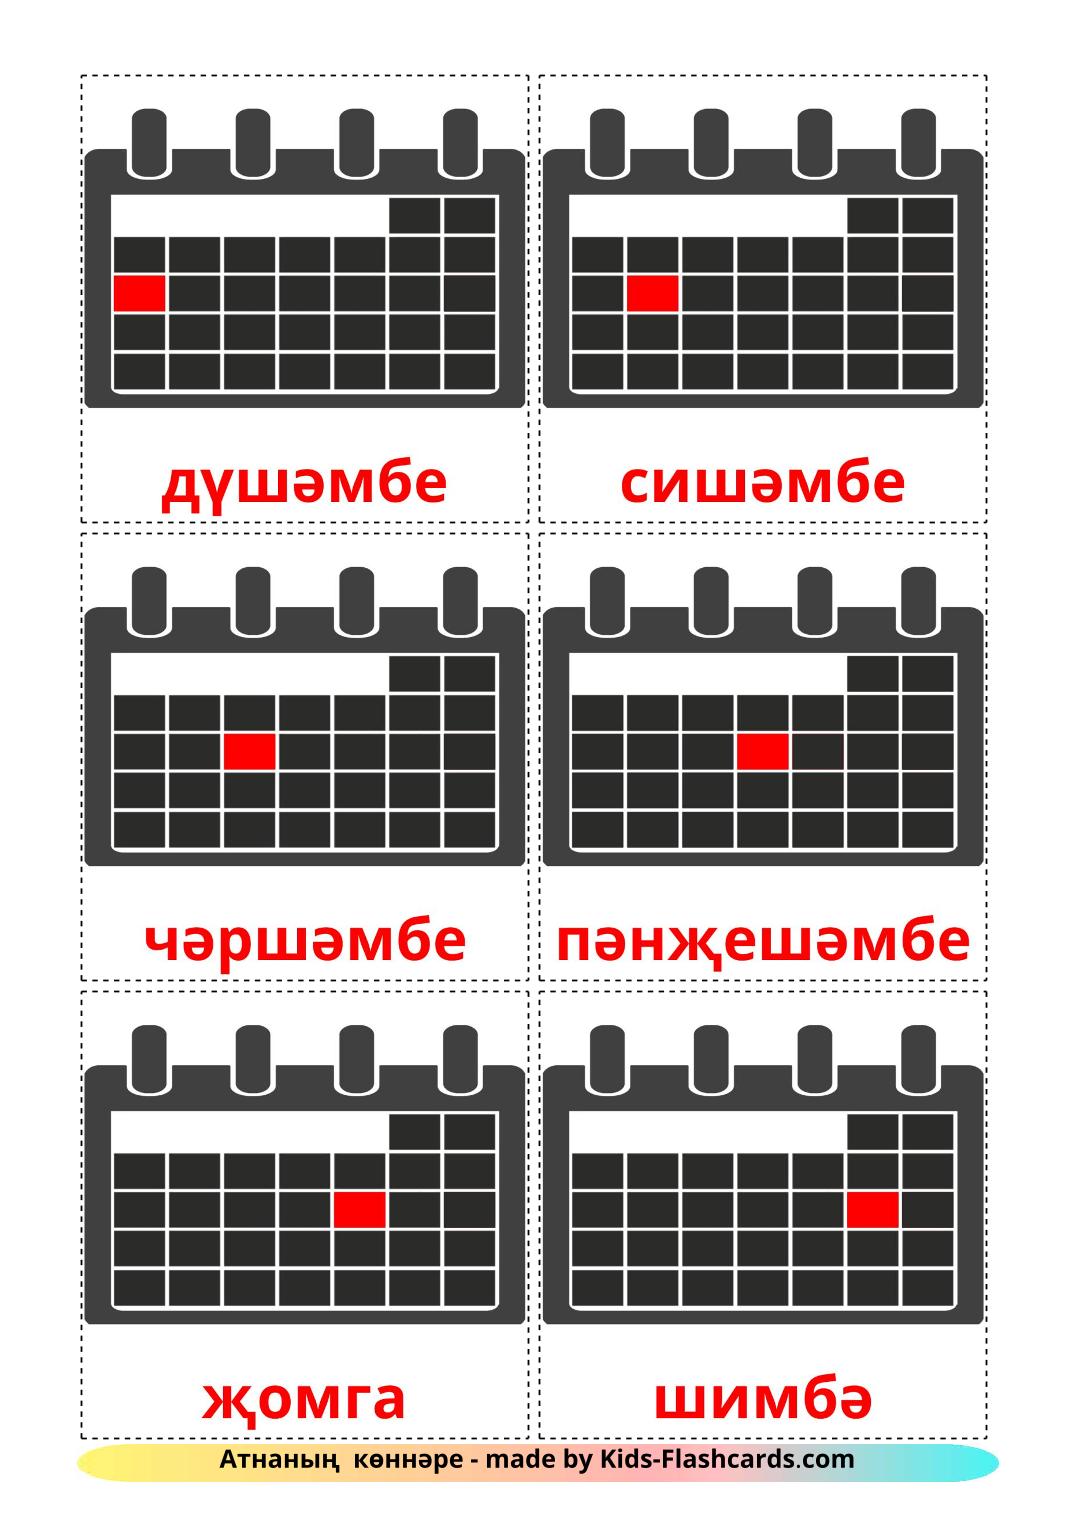 Dagen van de week - 12 gratis printbare tataarse kaarten